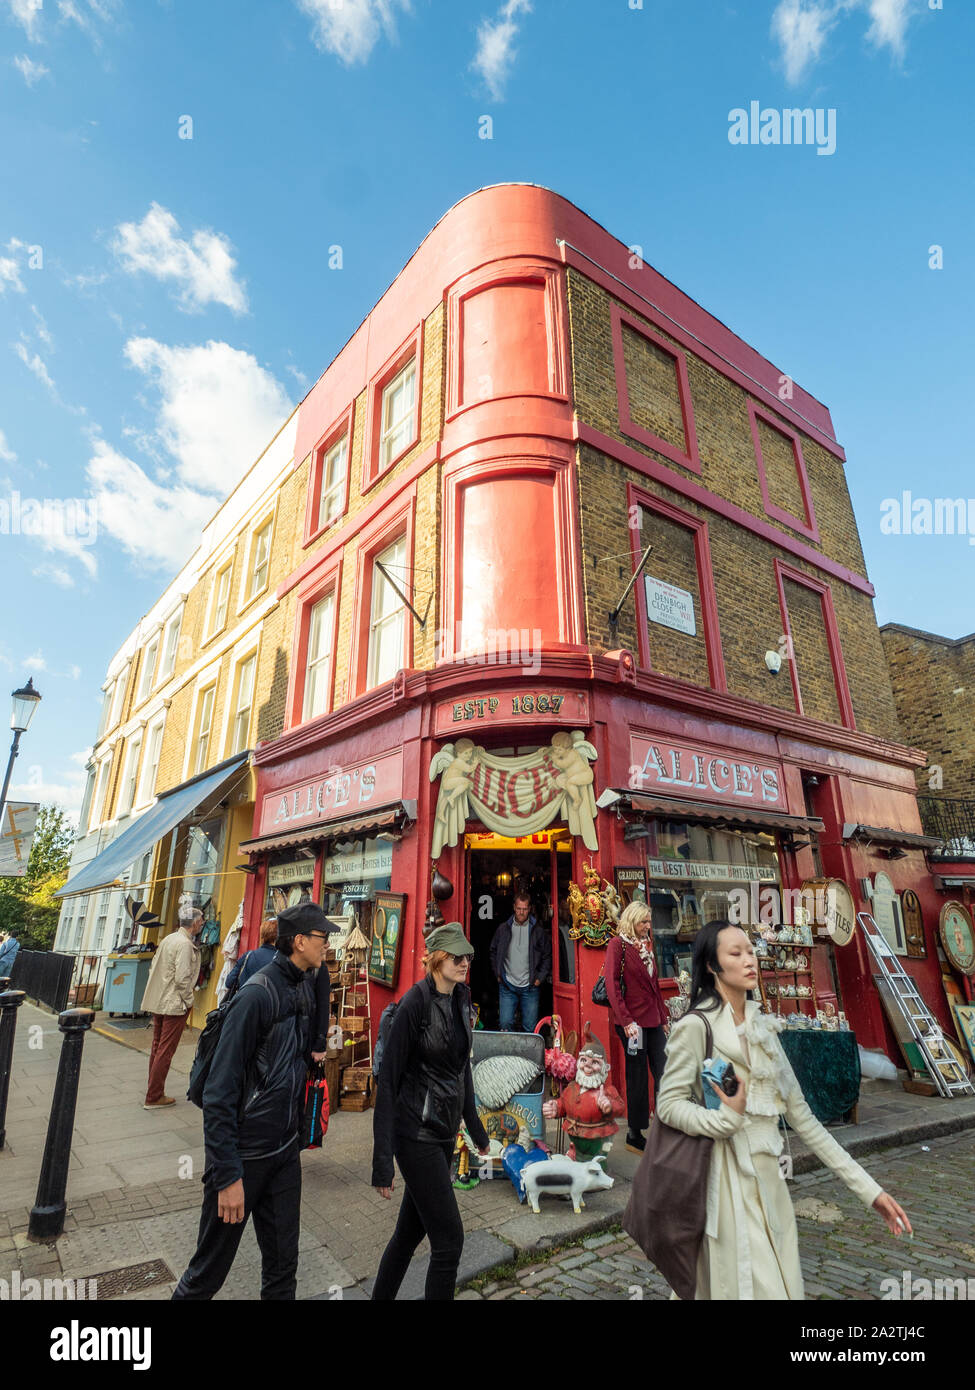 Negozio di antiquariato e curiosità di Alice (come nel film "Paddington"), all'angolo di Portabello Road, Notting Hill, Londra. Foto Stock